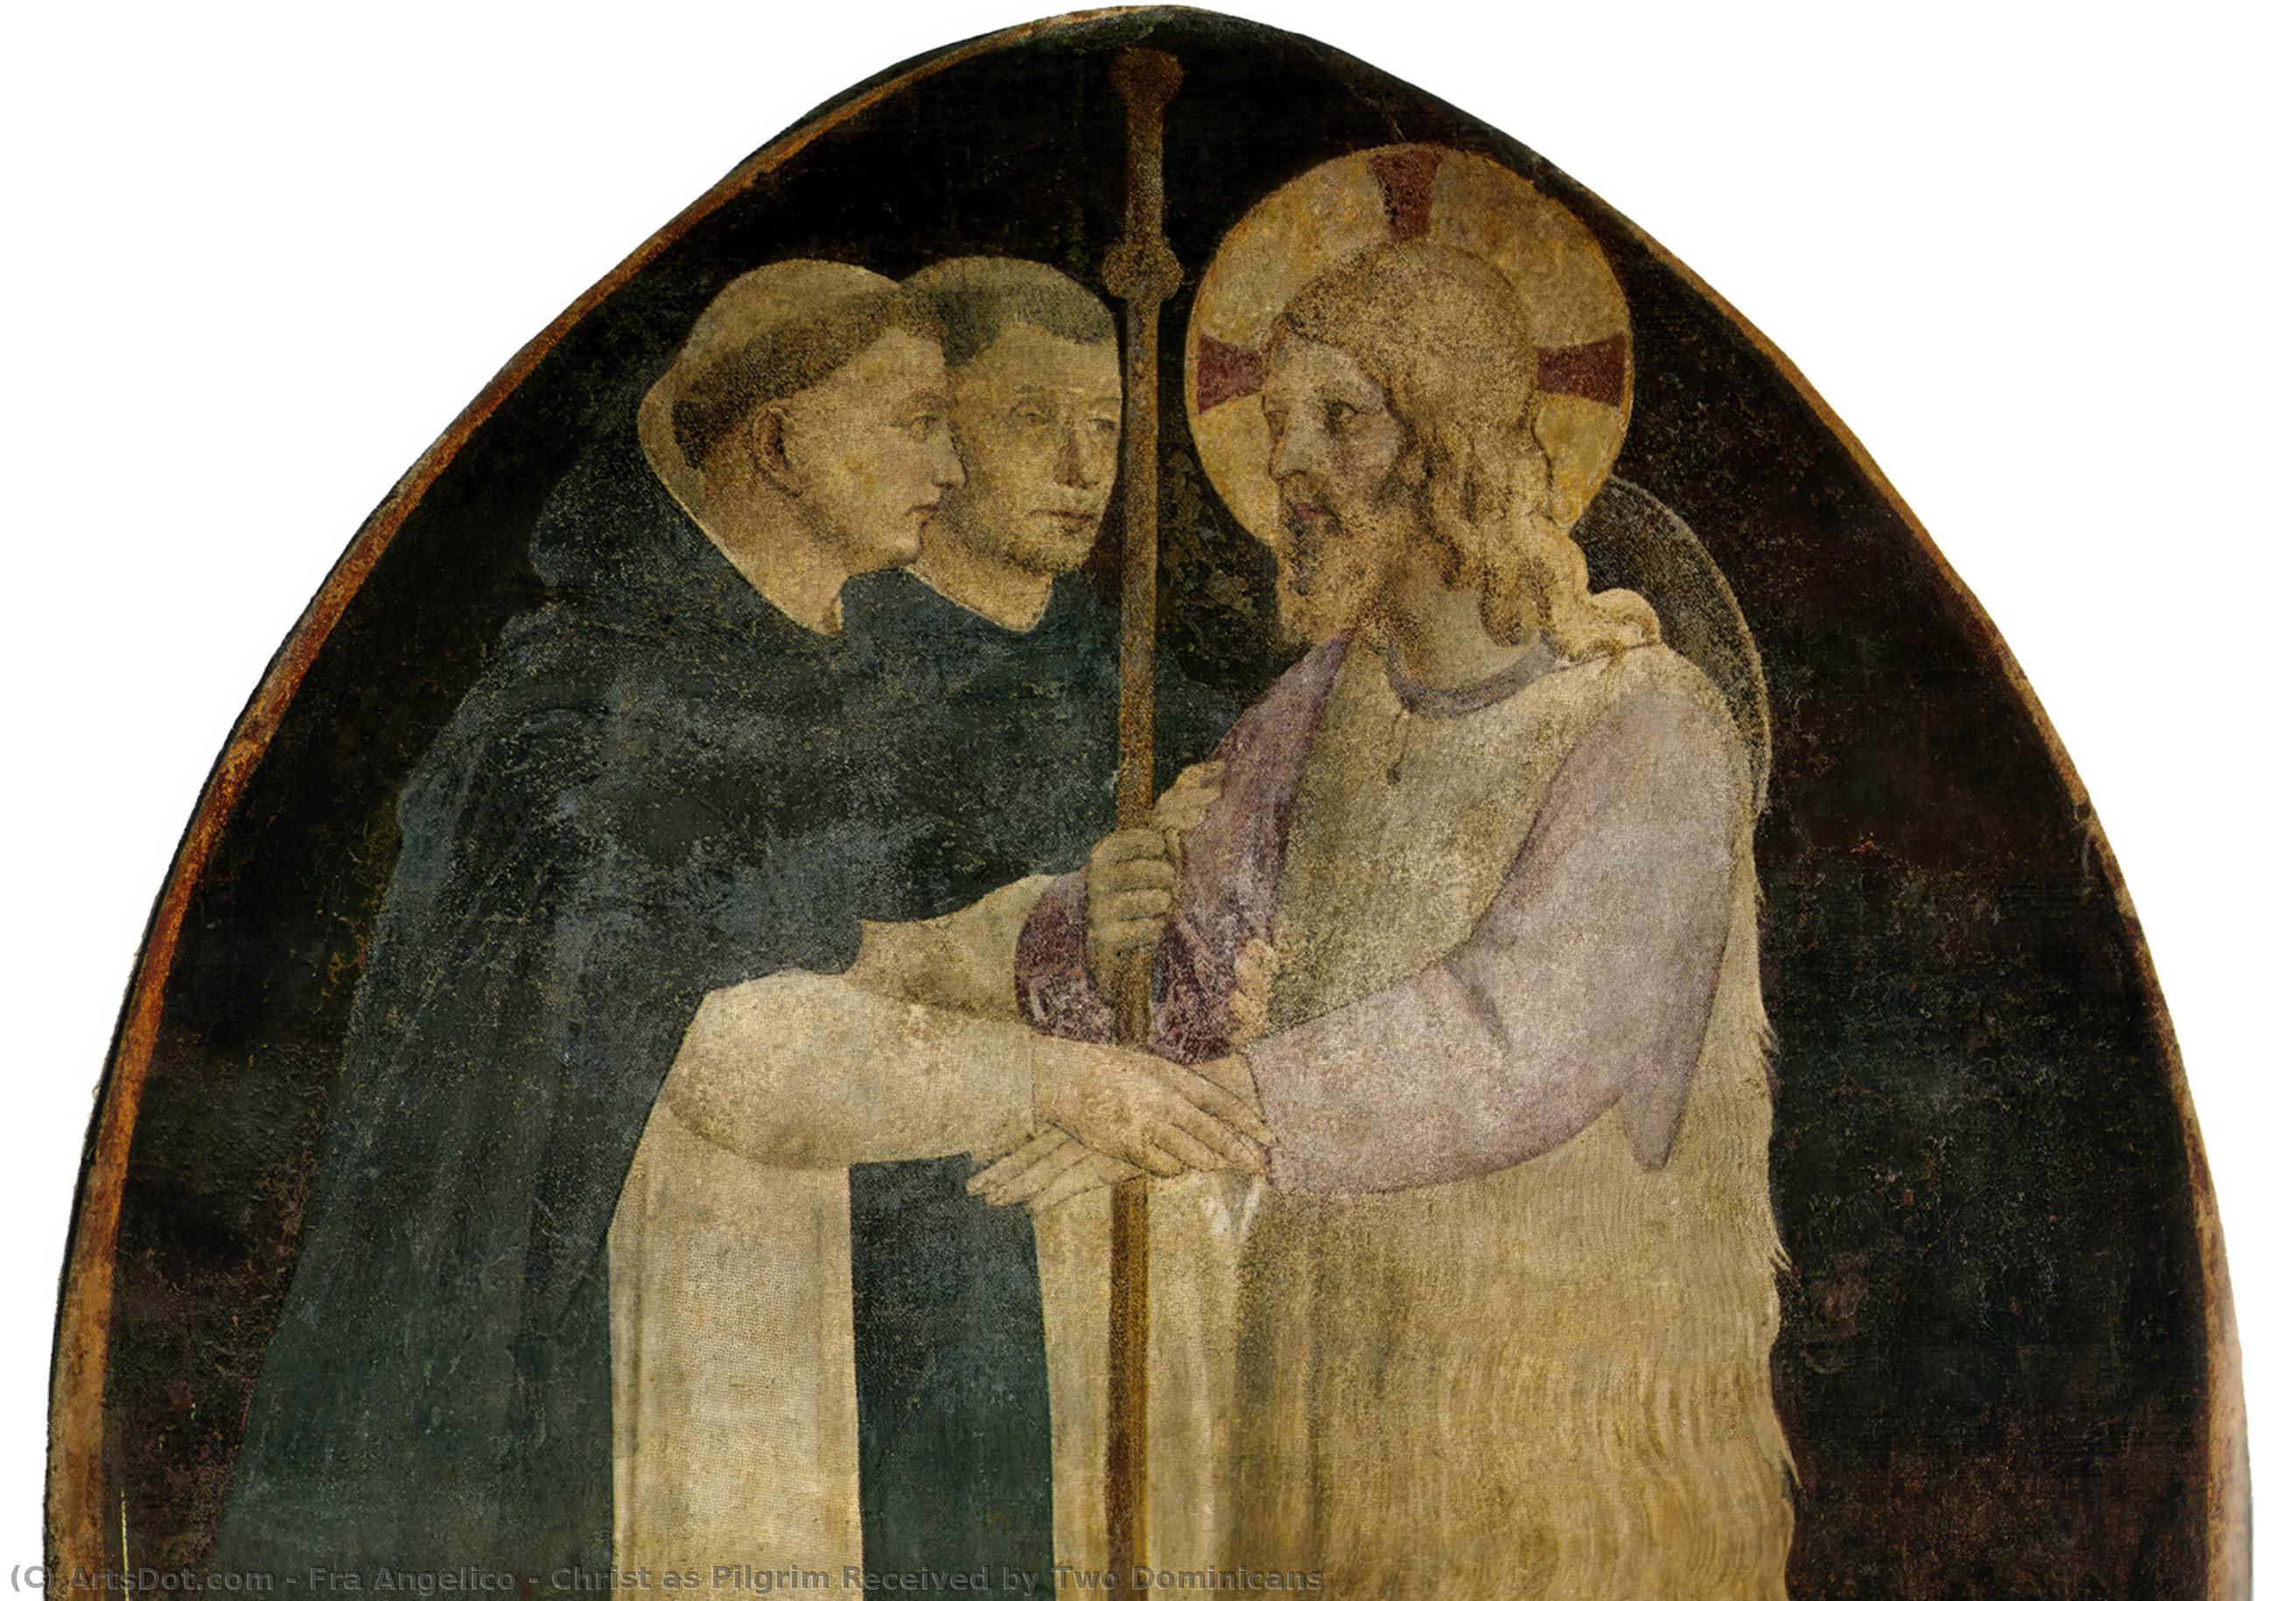 WikiOO.org - Енциклопедия за изящни изкуства - Живопис, Произведения на изкуството Fra Angelico - Christ as Pilgrim Received by Two Dominicans